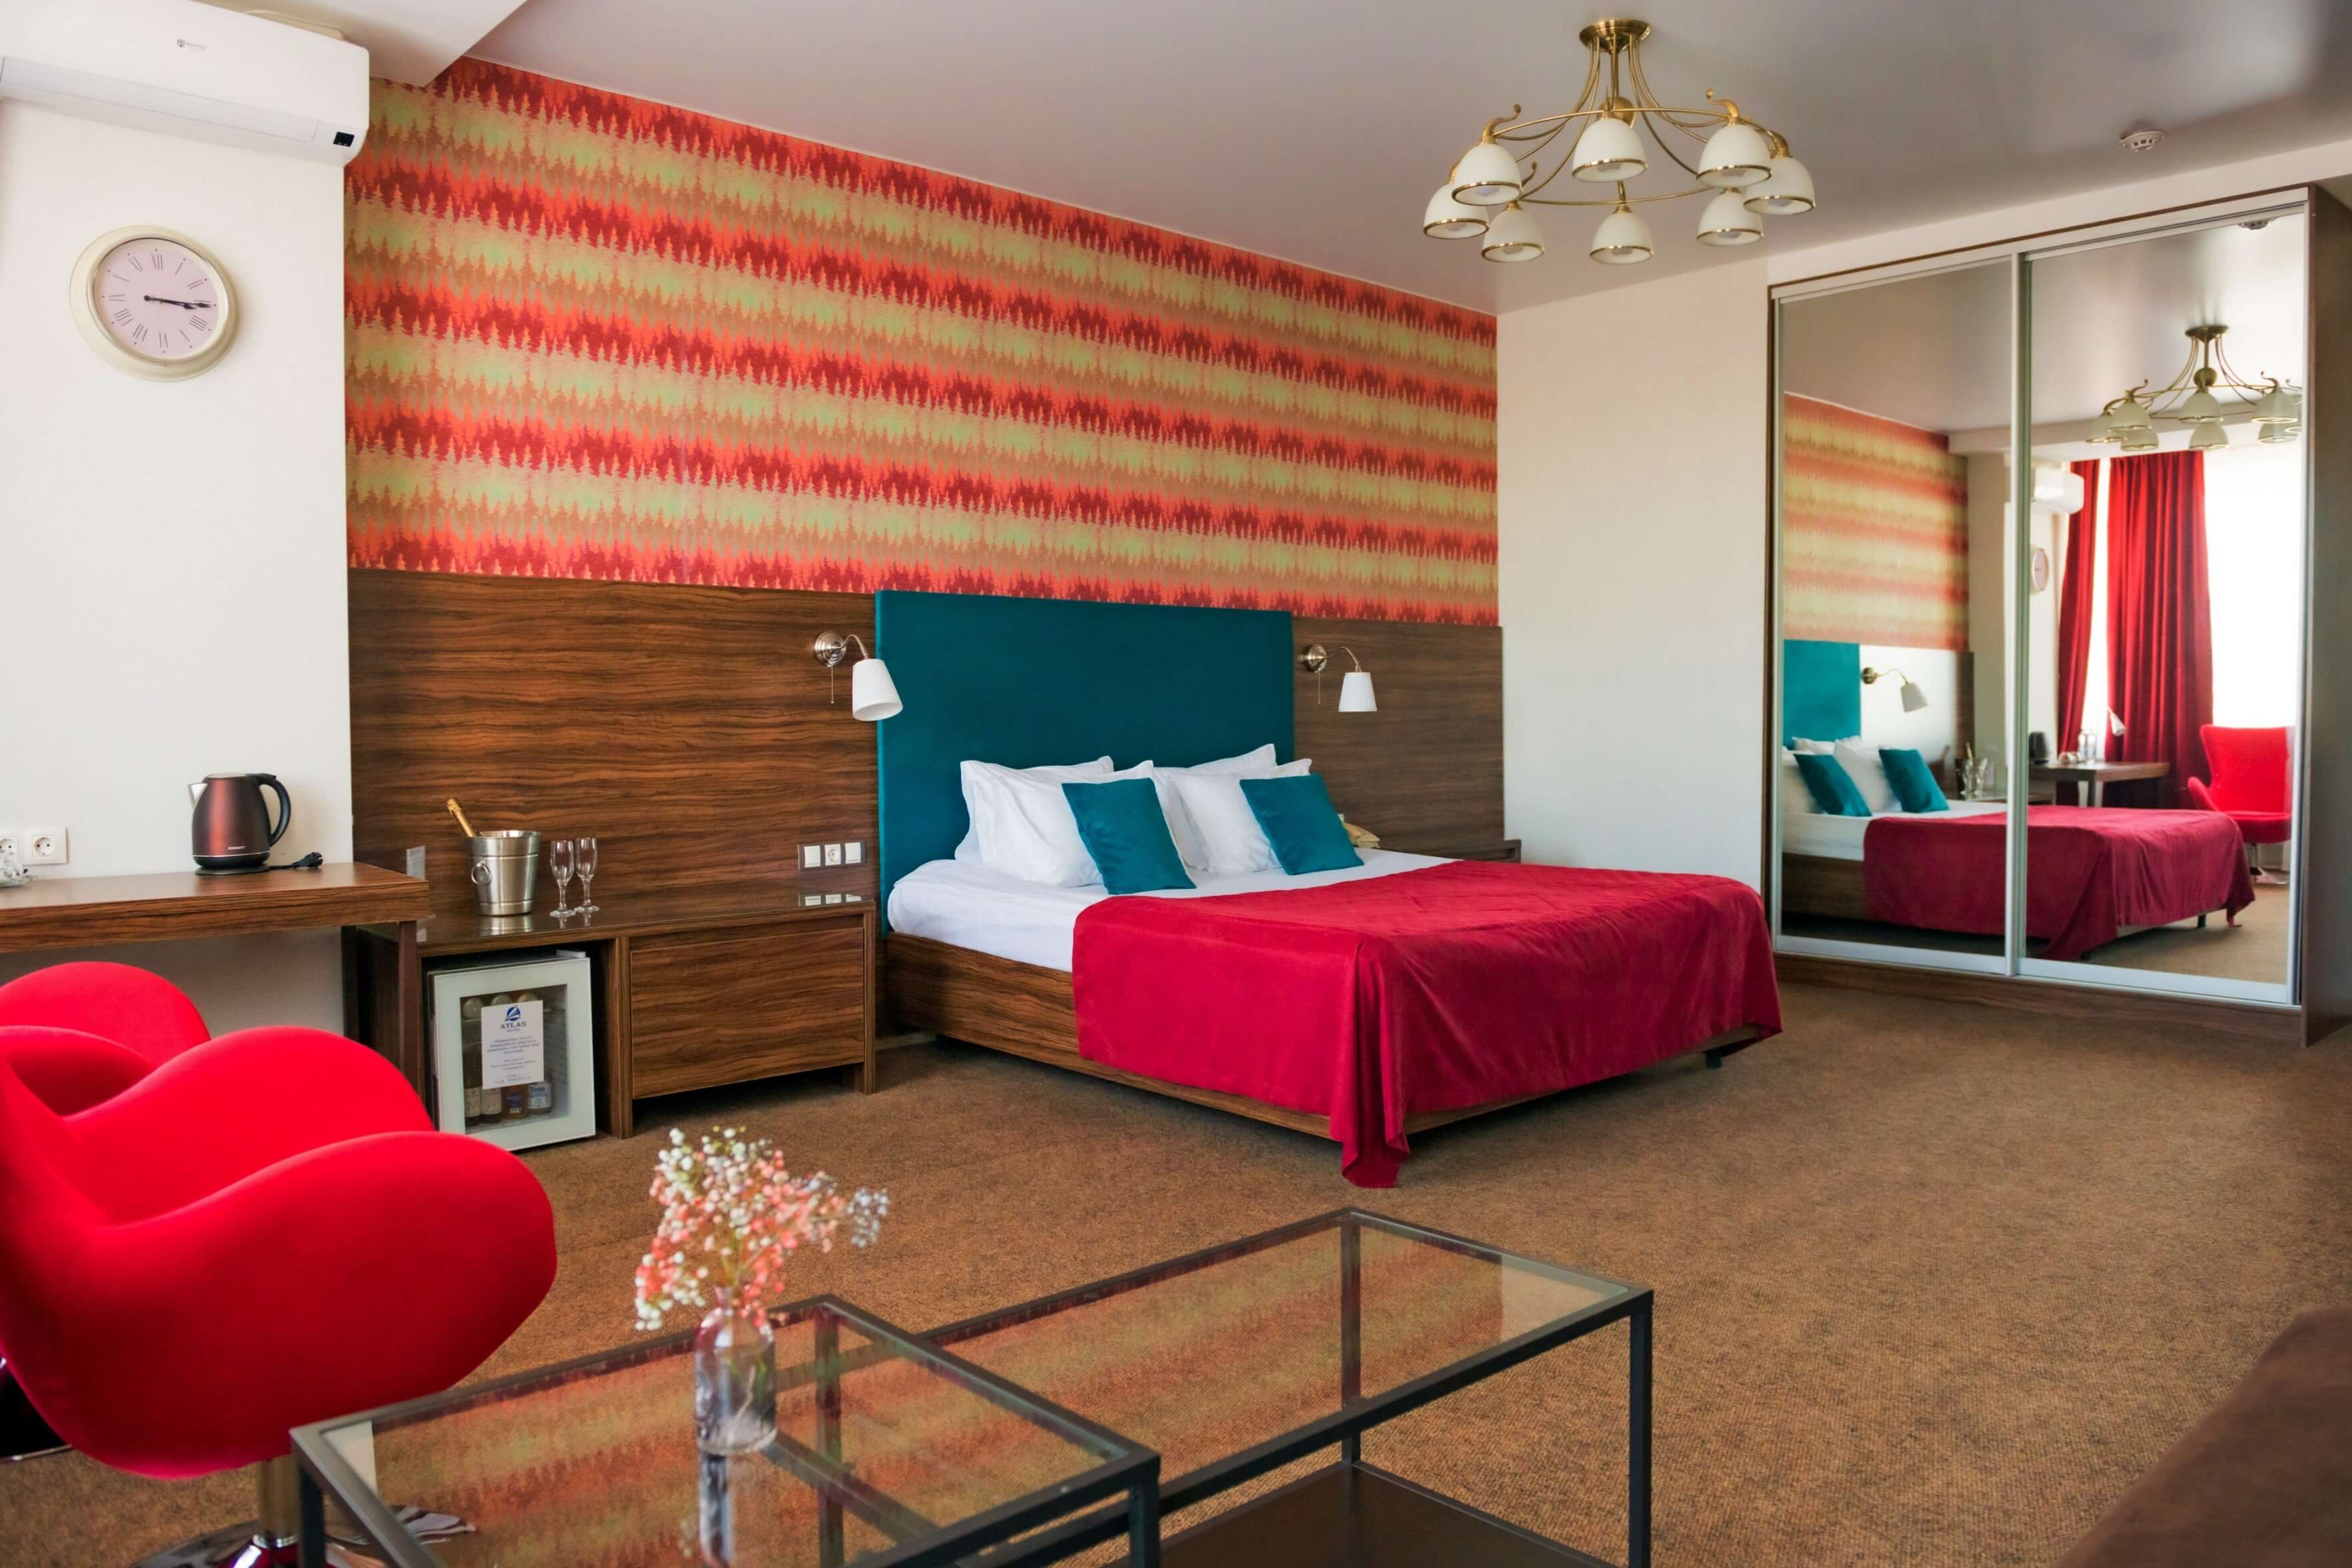 Гостиничный номер: большая кровать, шкаф-купе с зеркалом и два ярких красных кресла.